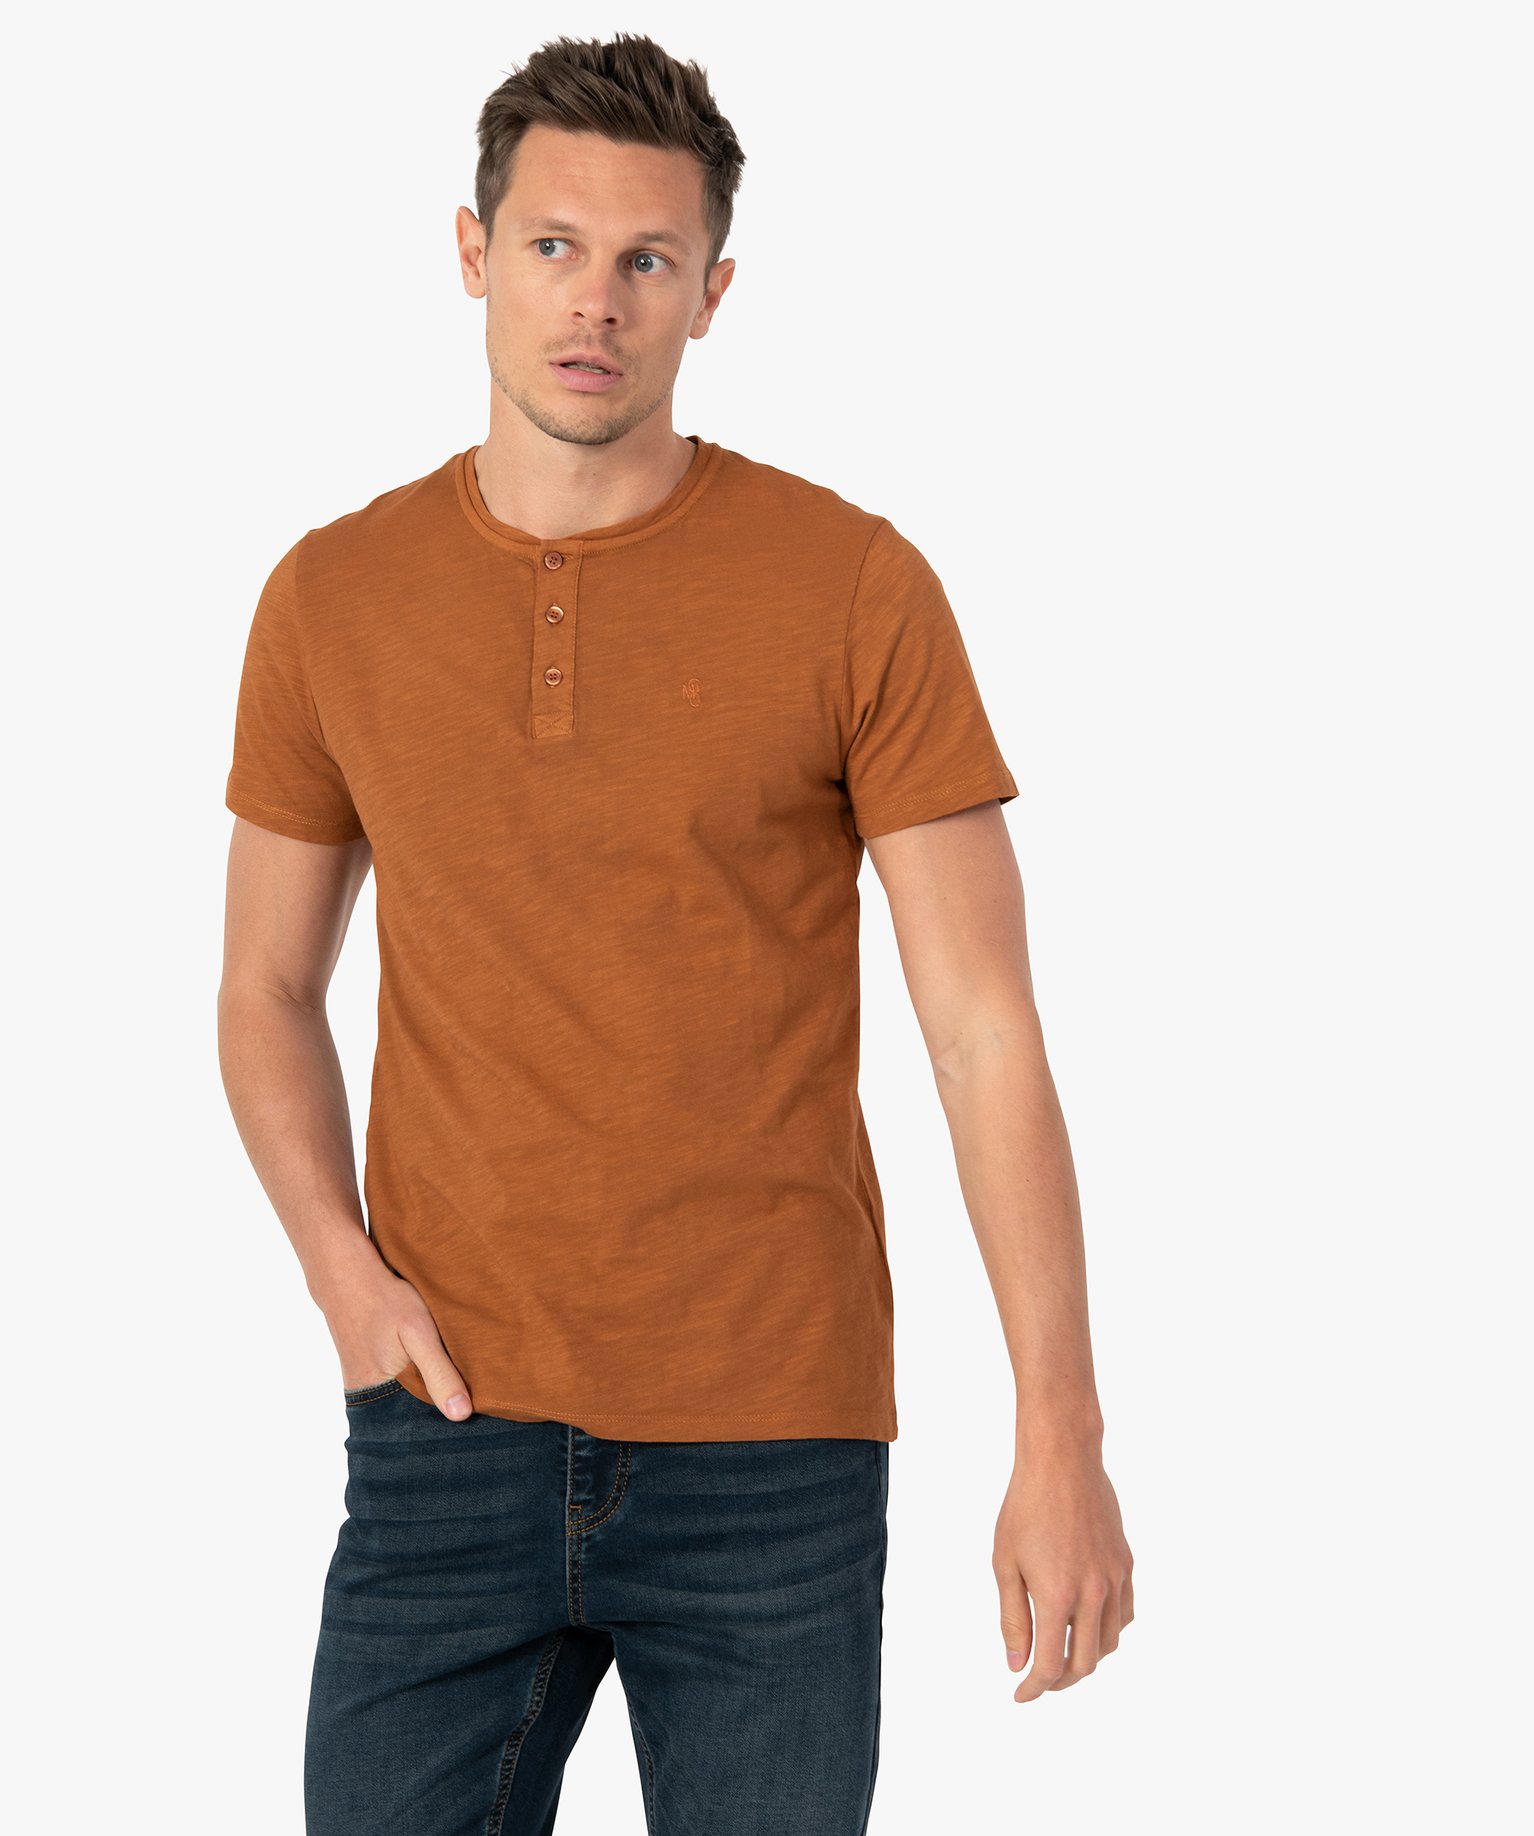 tee-shirt homme col tunisien a manches courtes au coloris unique brun tee-shirts